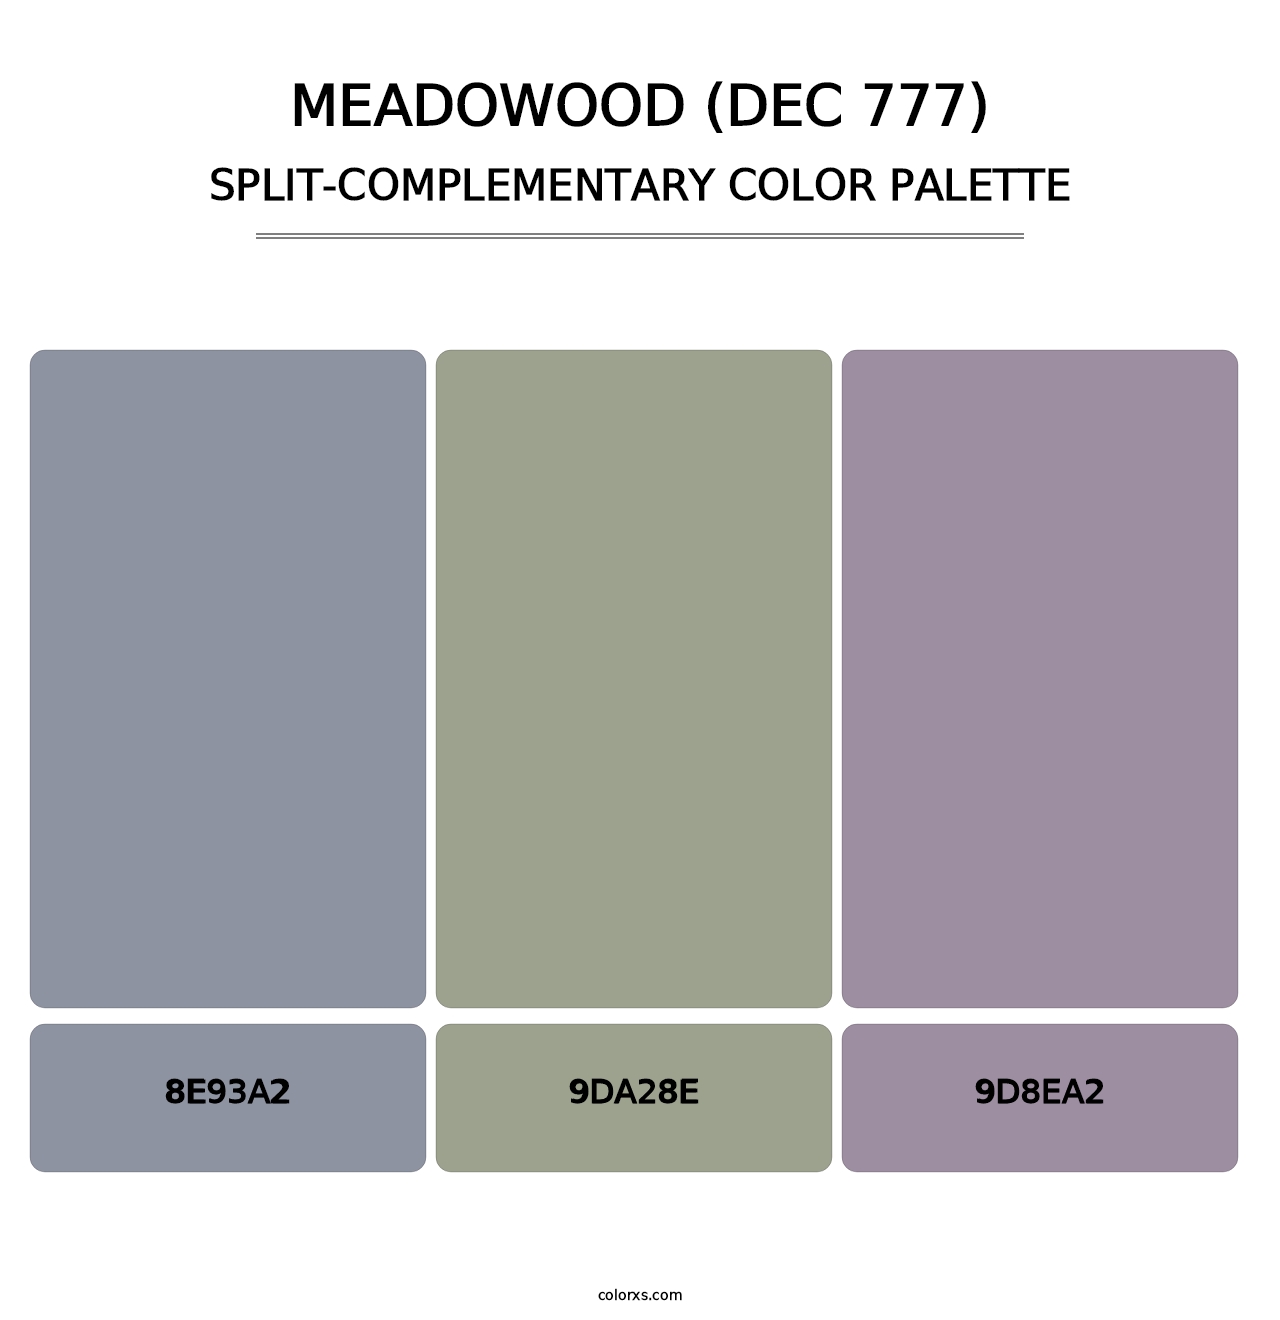 Meadowood (DEC 777) - Split-Complementary Color Palette